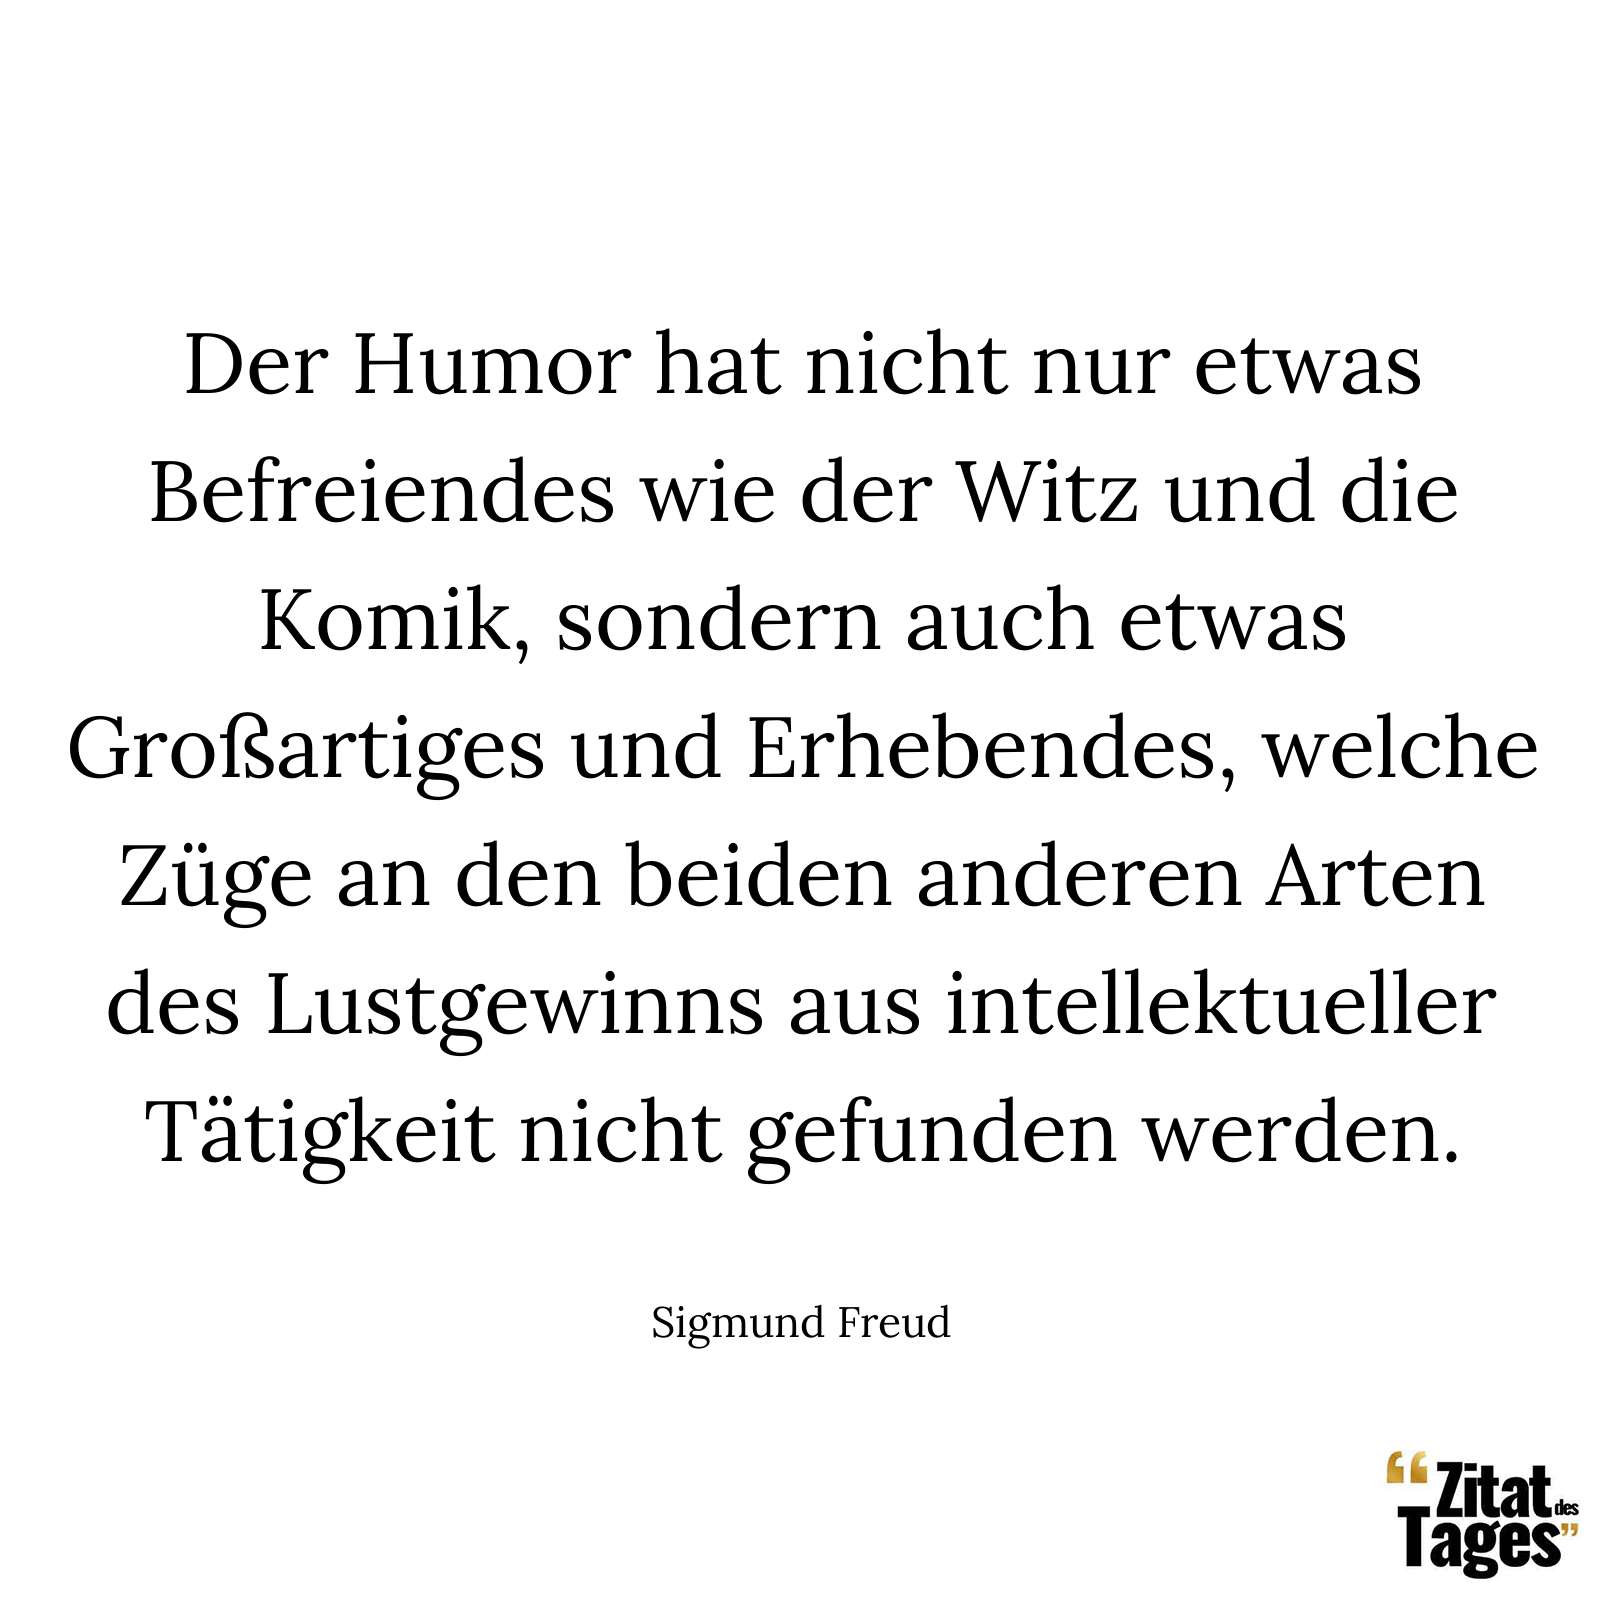 Der Humor hat nicht nur etwas Befreiendes wie der Witz und die Komik, sondern auch etwas Großartiges und Erhebendes, welche Züge an den beiden anderen Arten des Lustgewinns aus intellektueller Tätigkeit nicht gefunden werden. - Sigmund Freud